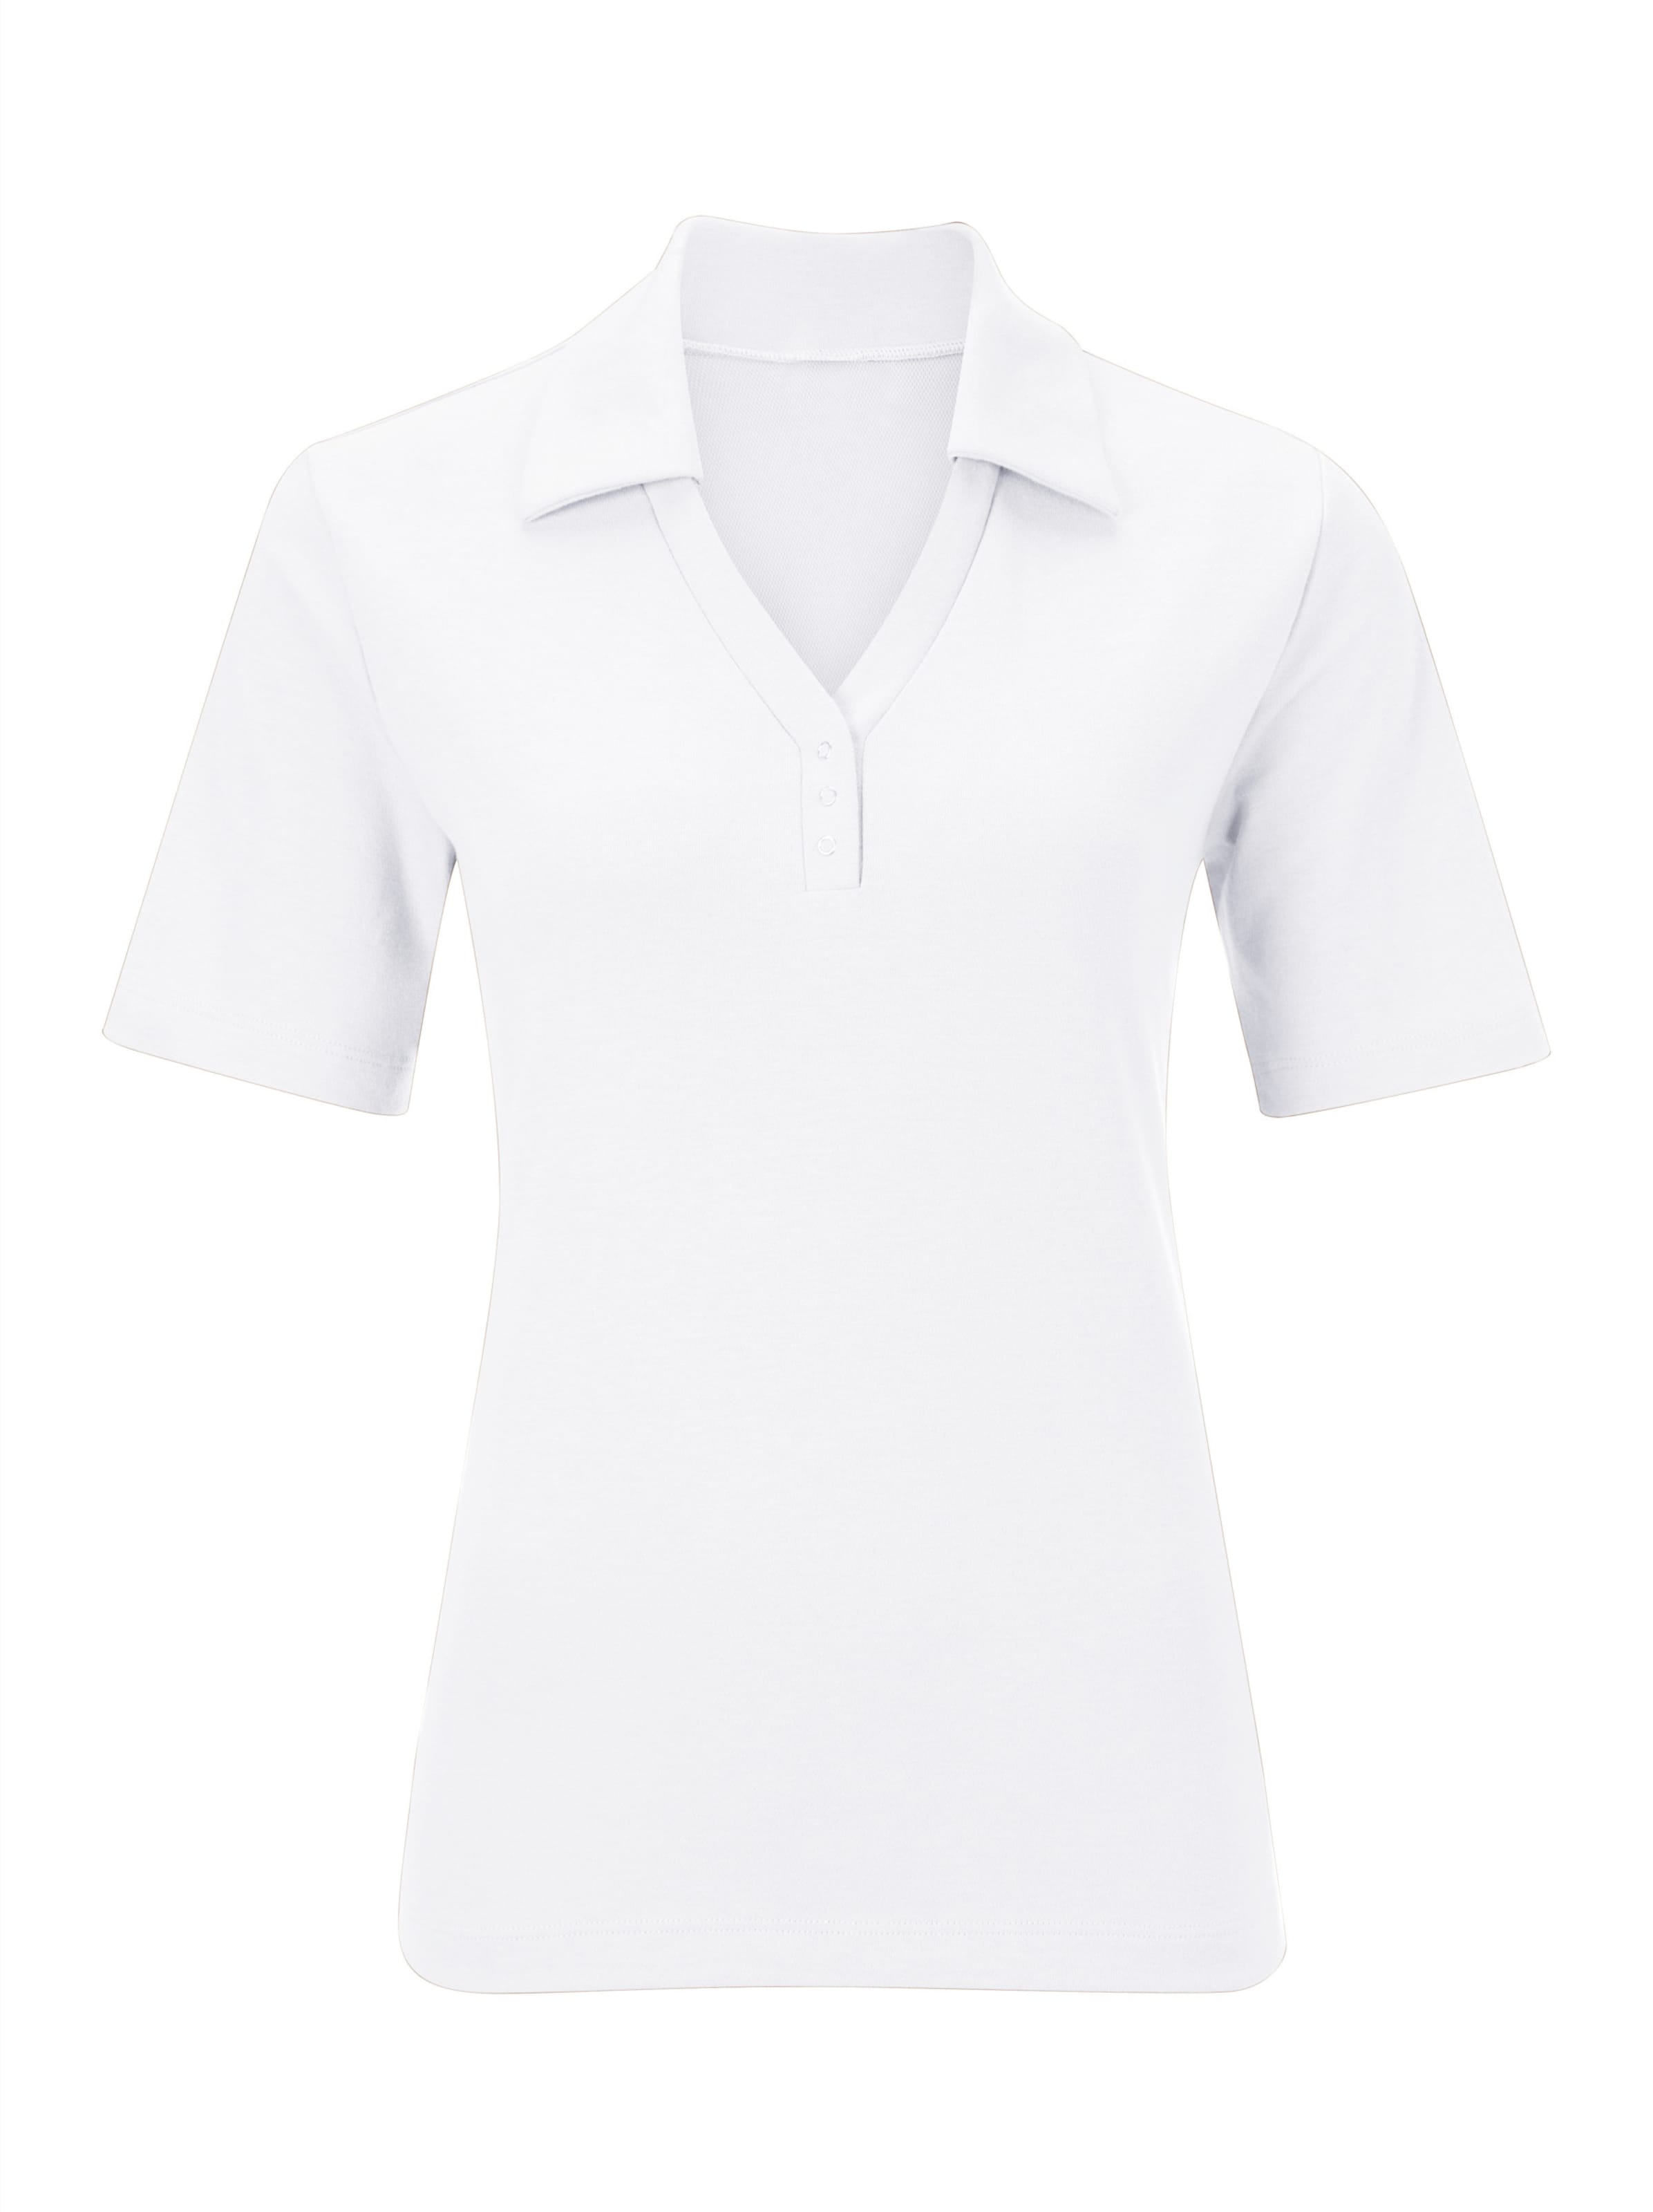 Poloshirt mit günstig Kaufen-Poloshirt in weiß von heine. Poloshirt in weiß von heine <![CDATA[Shirt mit offener Kragenlösung. Kleine Knopfleiste mit Druckknöpfen. Seitenschlitze. Spezielle Stay Cool & Dry-Ausrüstung.]]>. 